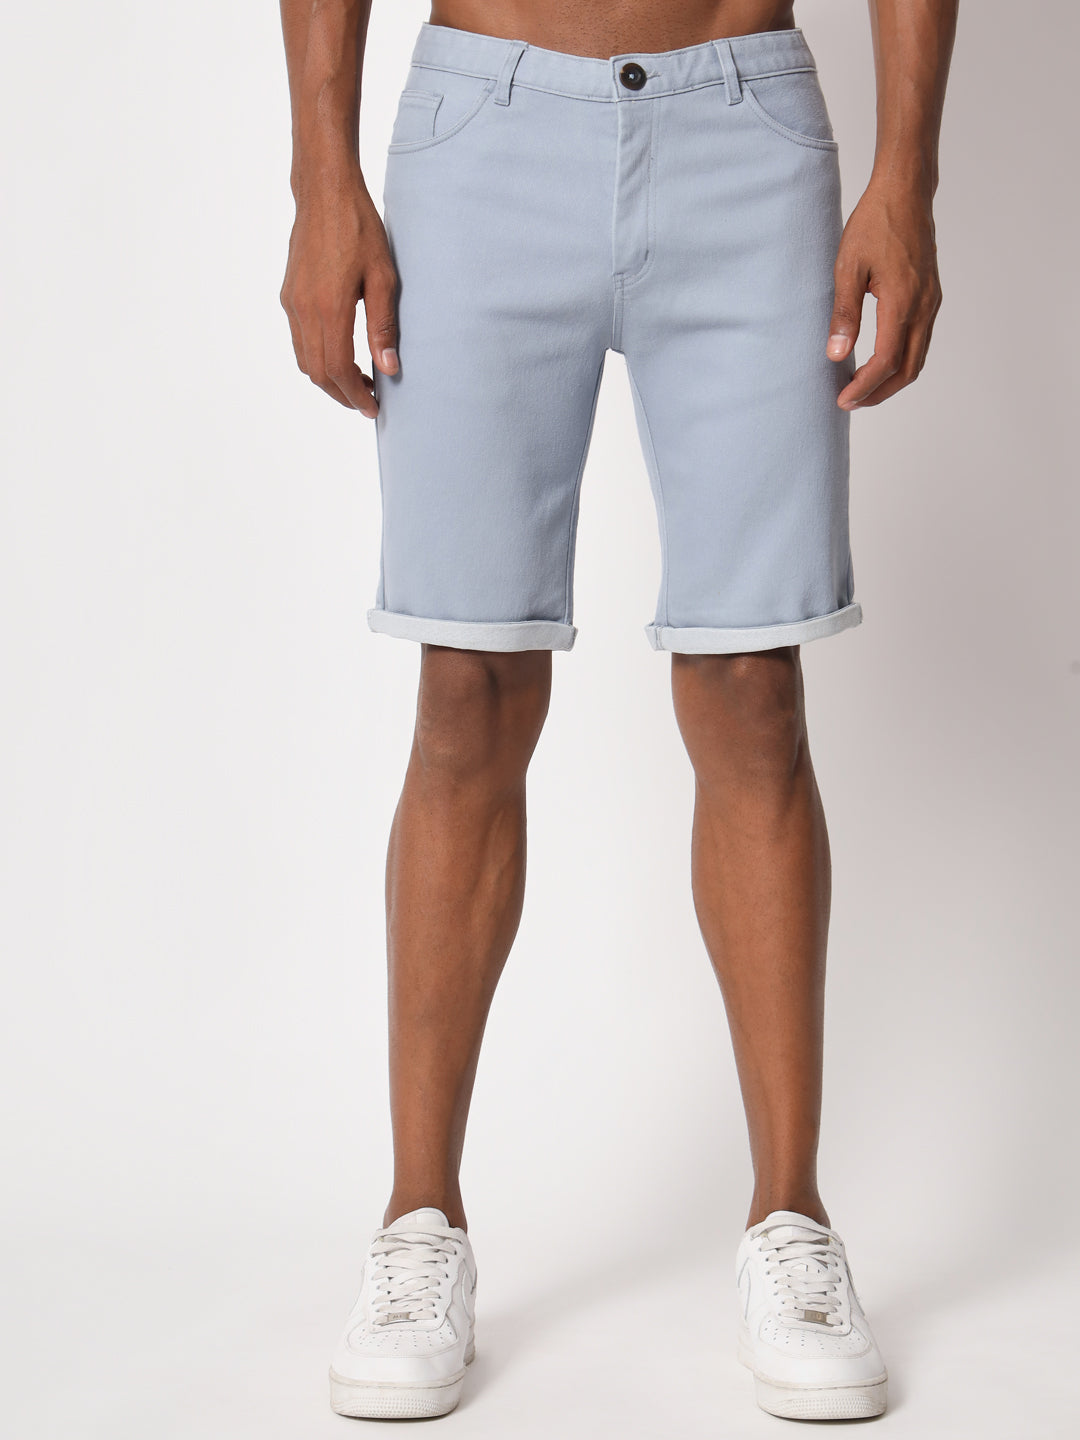 Denim Blue Shorts